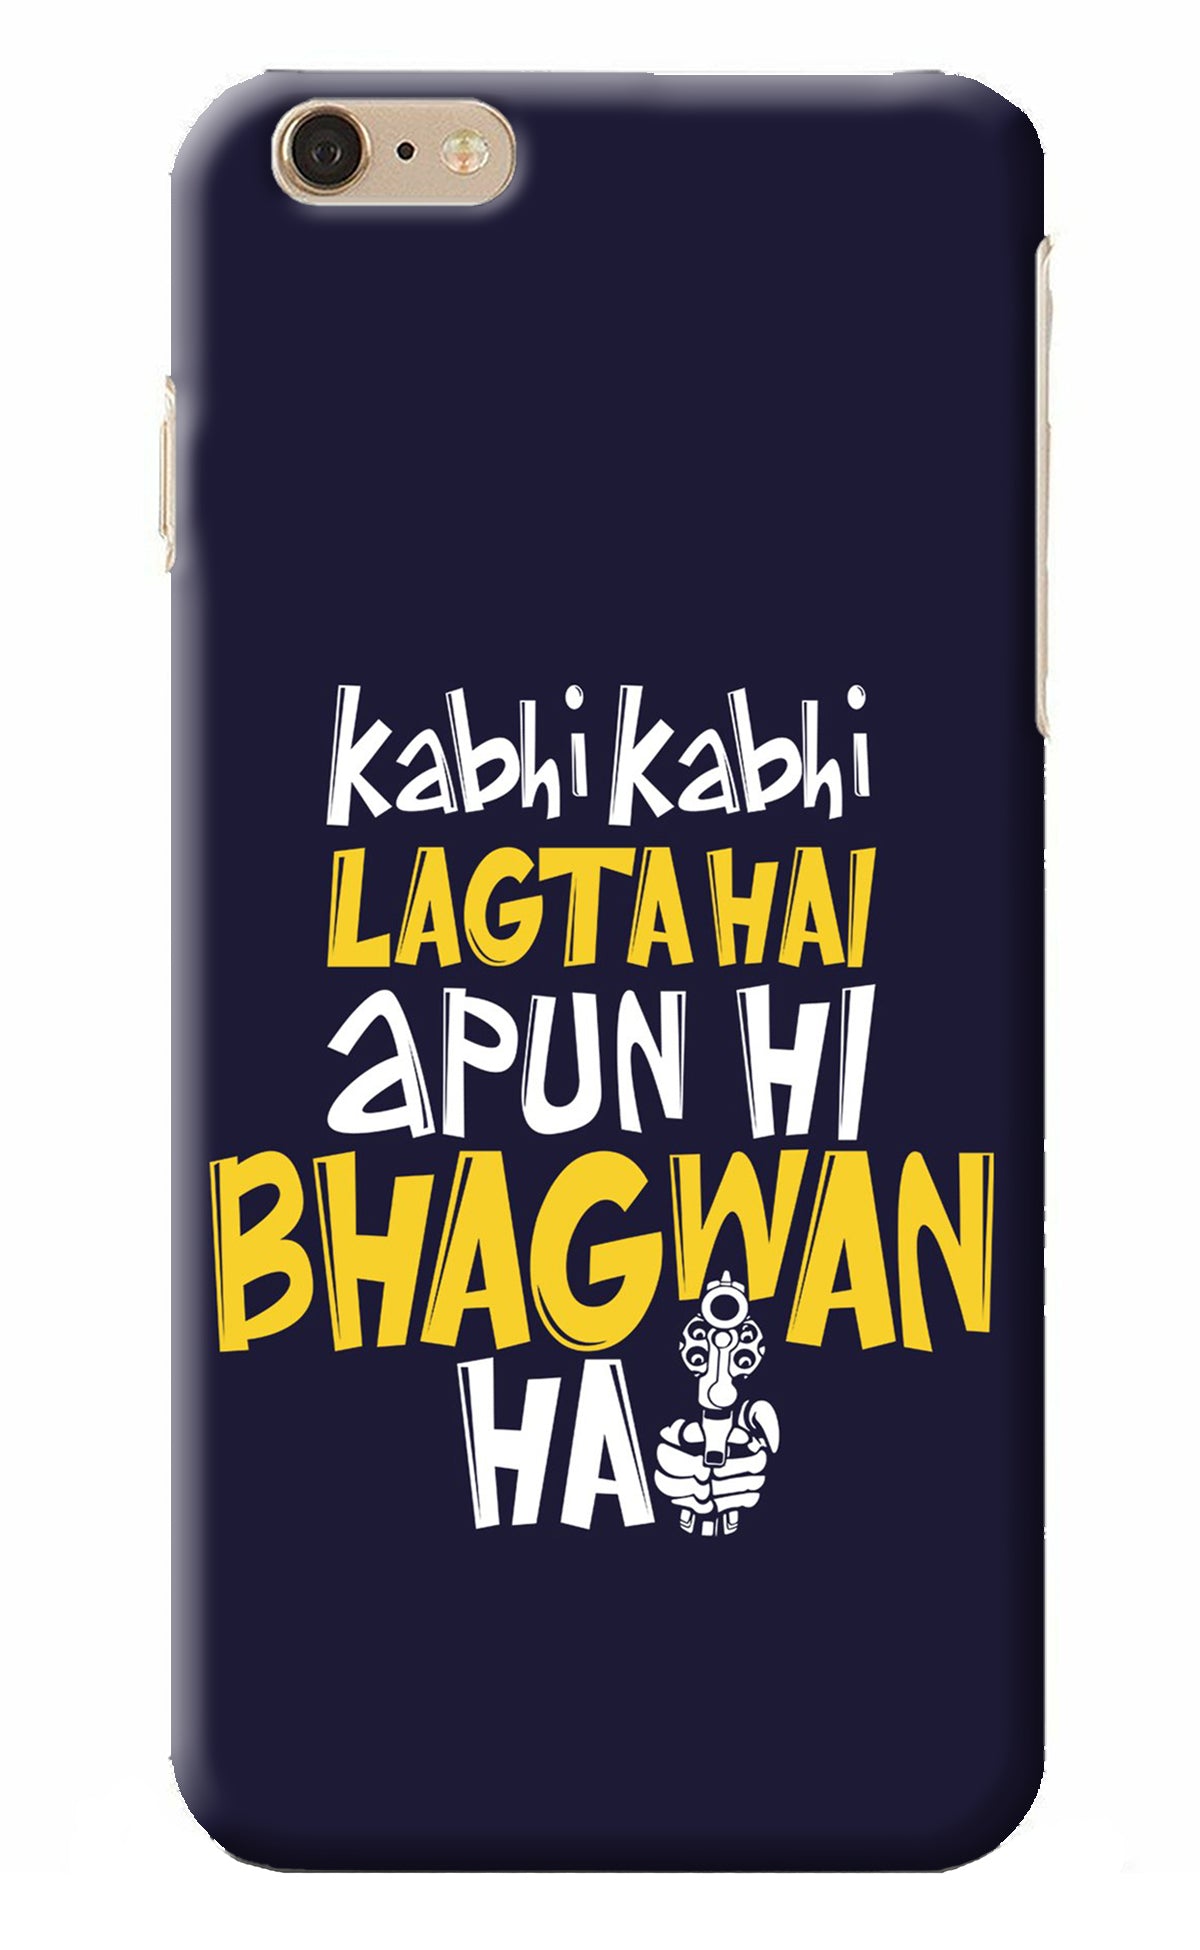 Kabhi Kabhi Lagta Hai Apun Hi Bhagwan Hai iPhone 6 Plus/6s Plus Back Cover